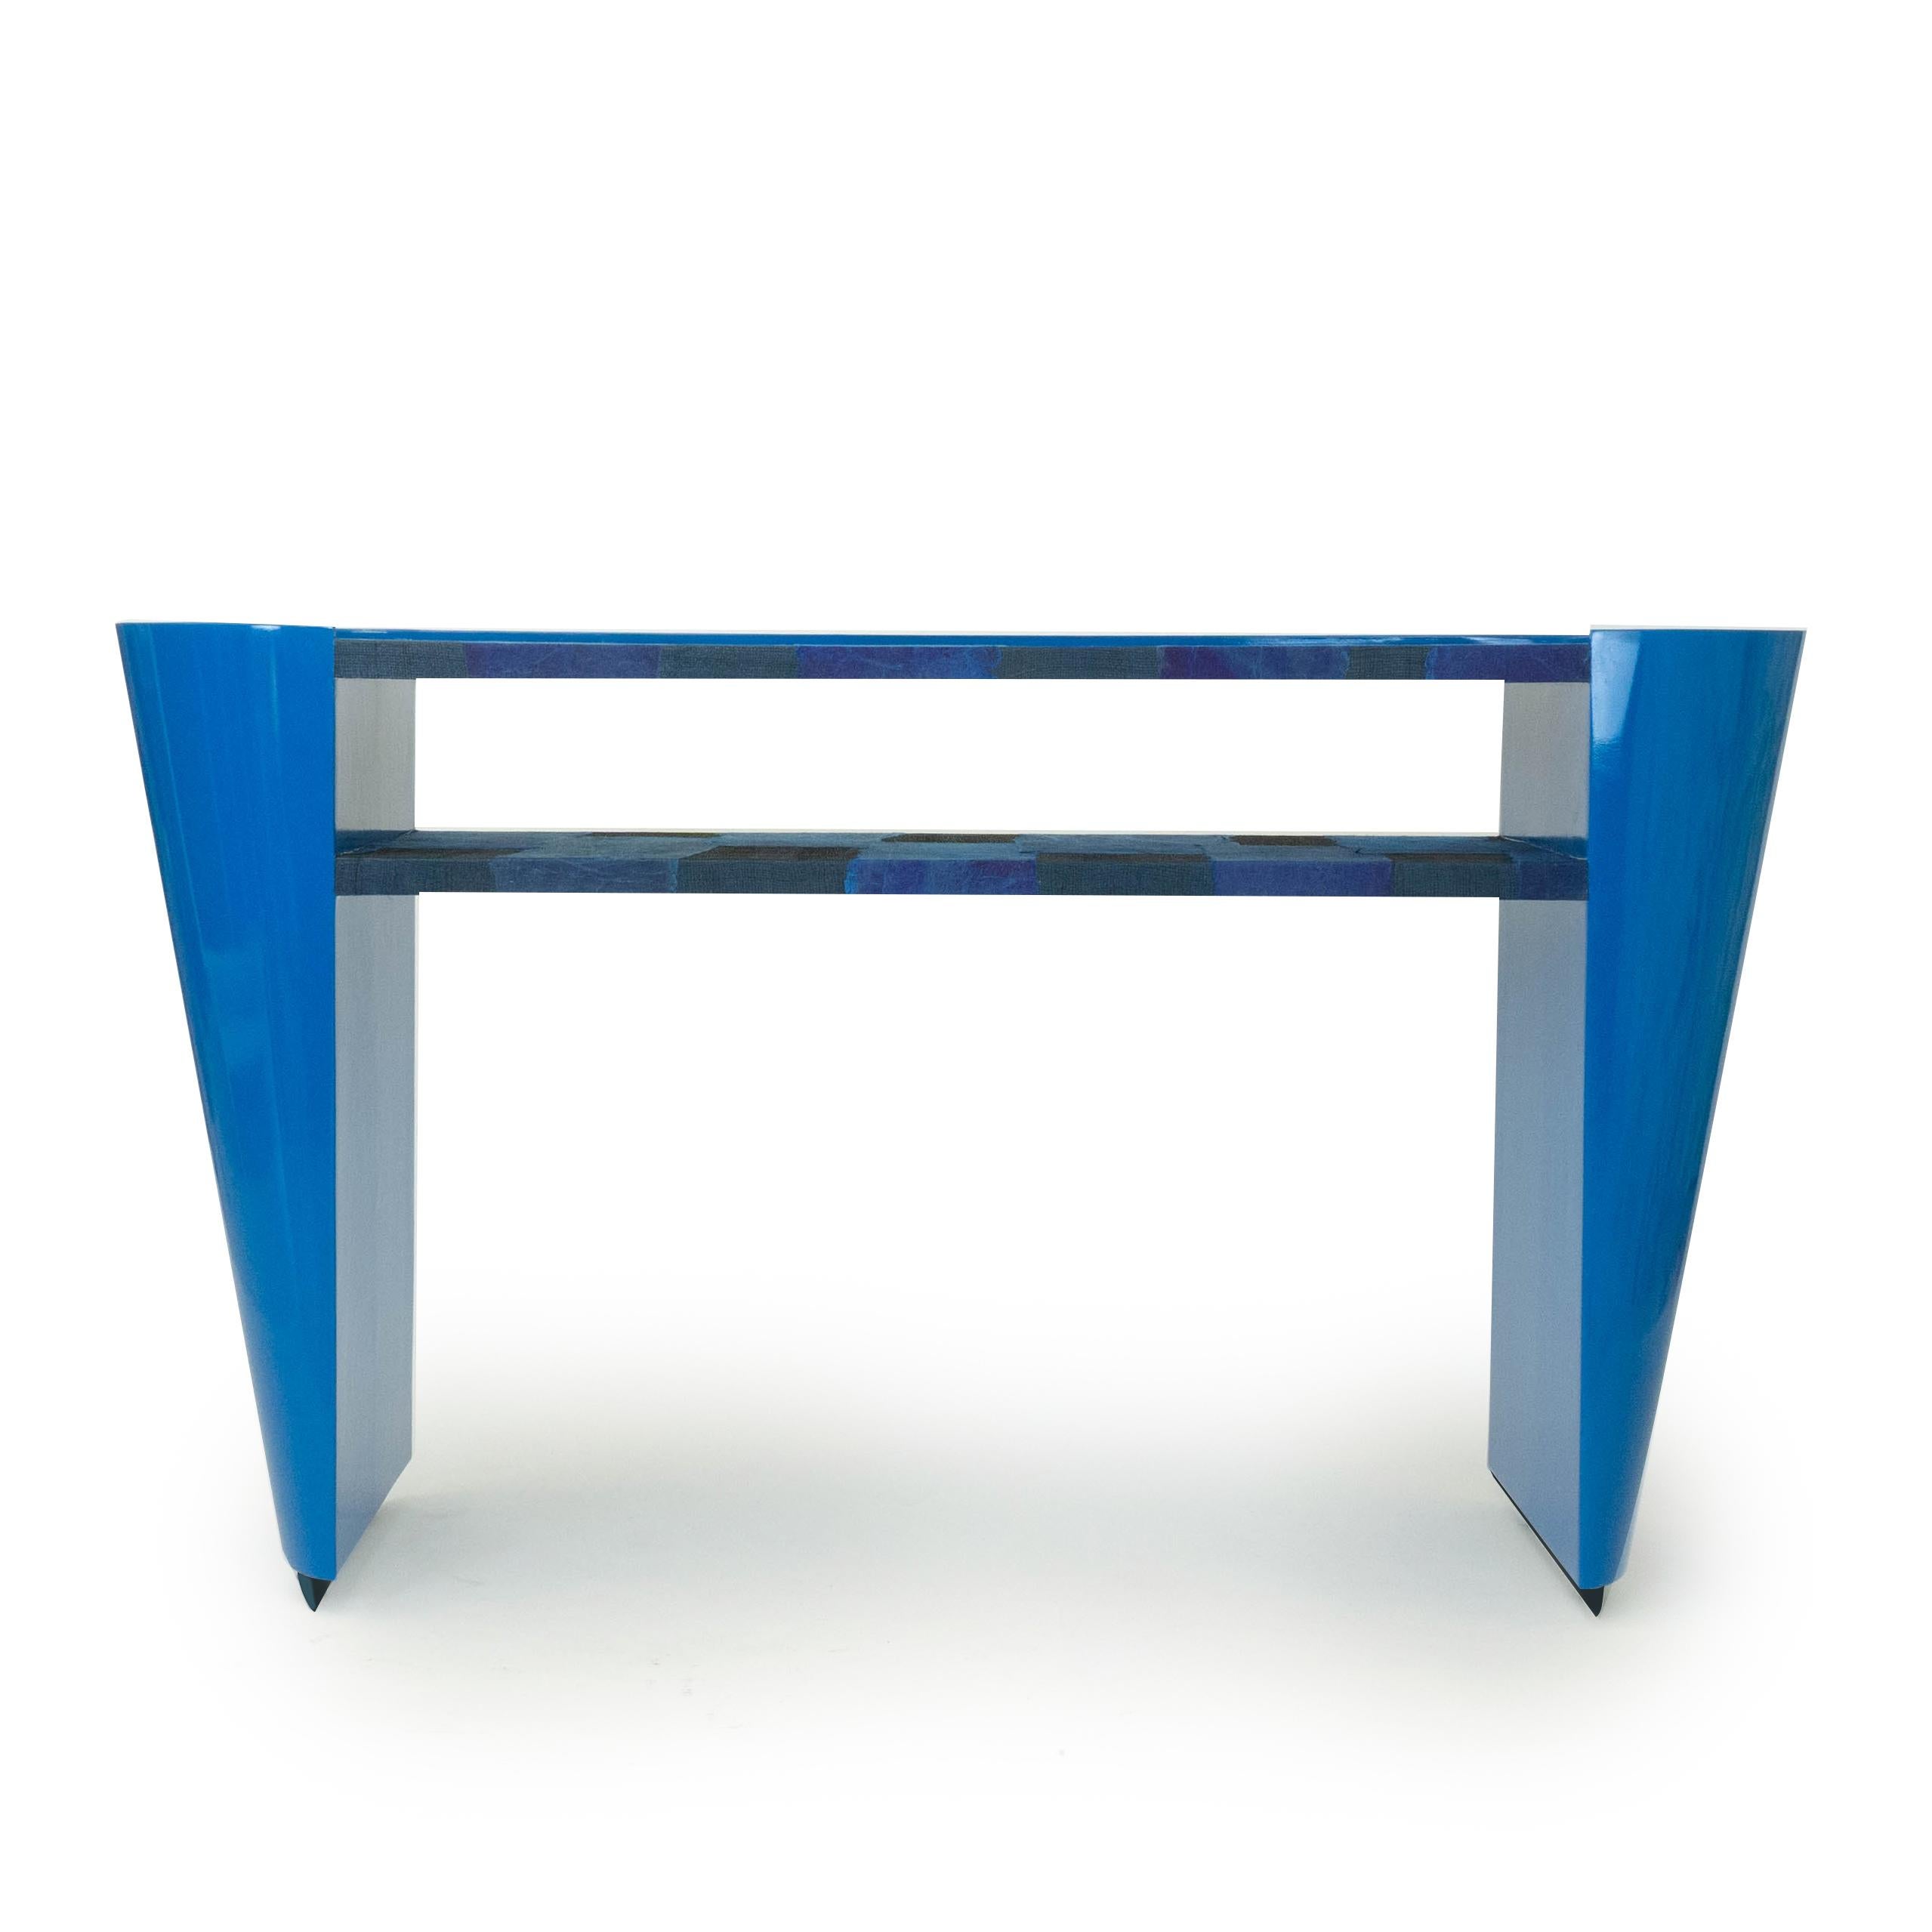 Notre nouvelle table console moderne d'inspiration Art déco est laquée en bleu laguna et bleu marine. La table comporte une étagère et un plateau recouvert de raphias tissés à la main et de morceaux de papier. Cette pièce est fabriquée en bois